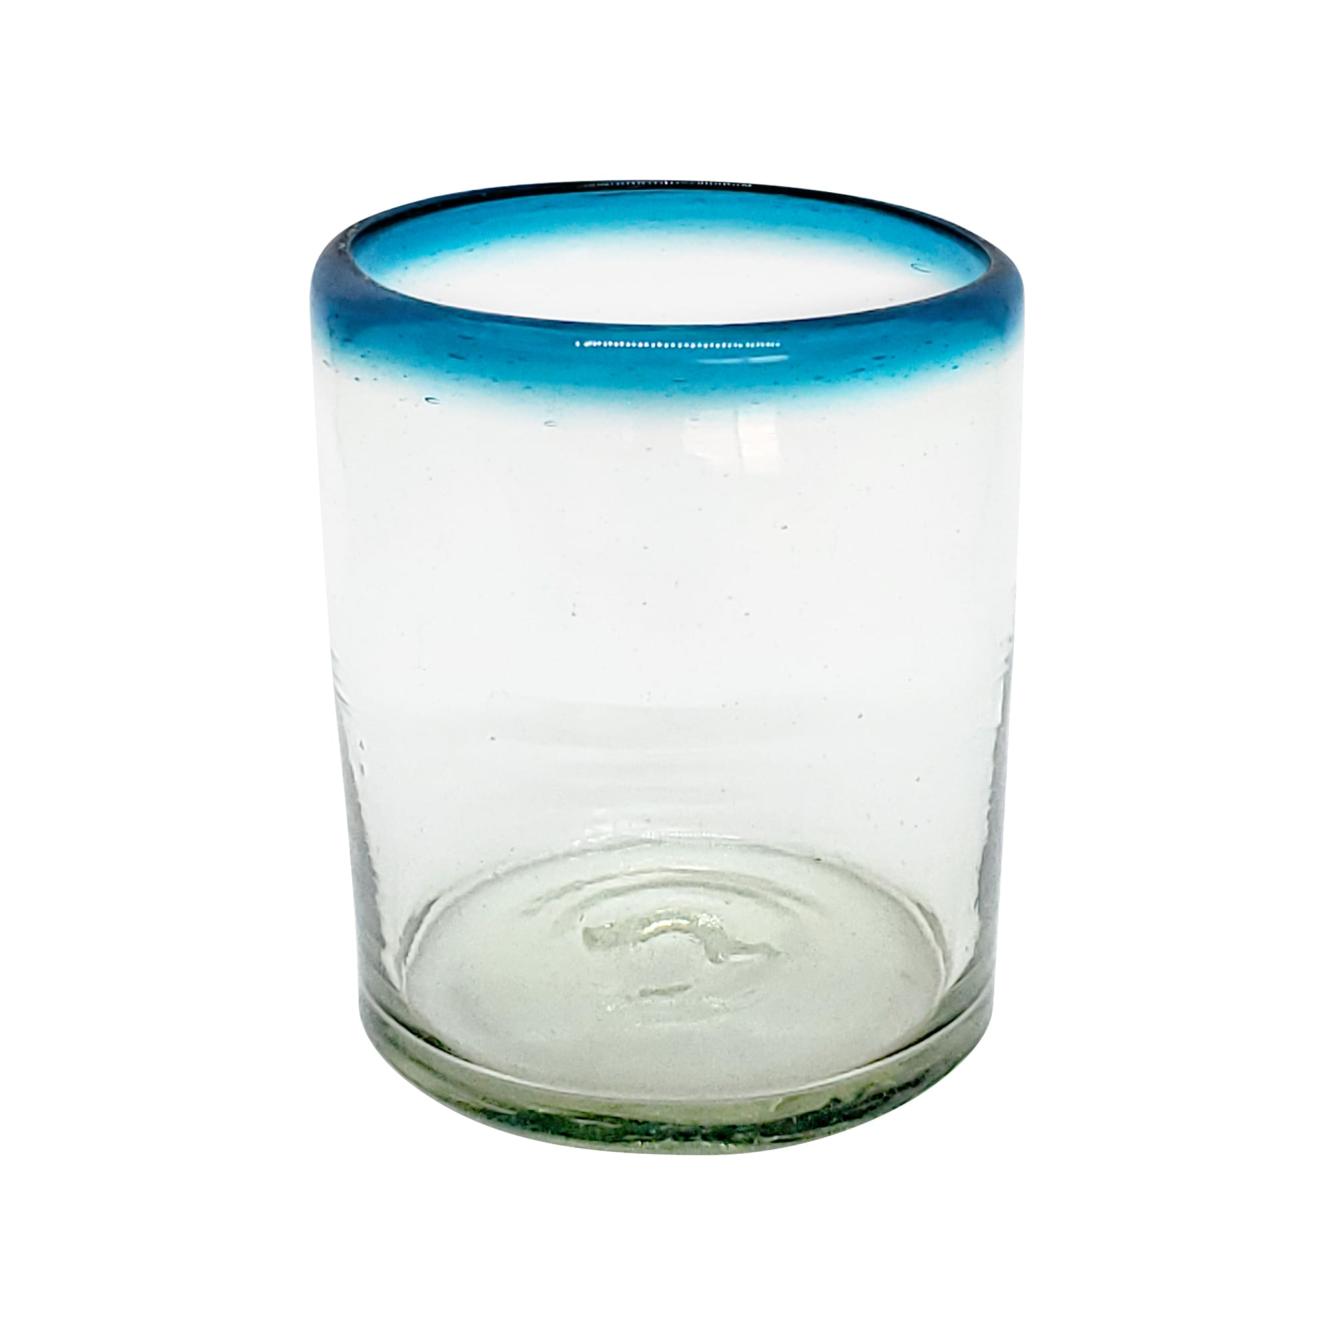 Borde de Color al Mayoreo / vasos chicos con borde azul aqua / stos vasos chicos son un gran complemento para su juego de jarra y vasos grandes.